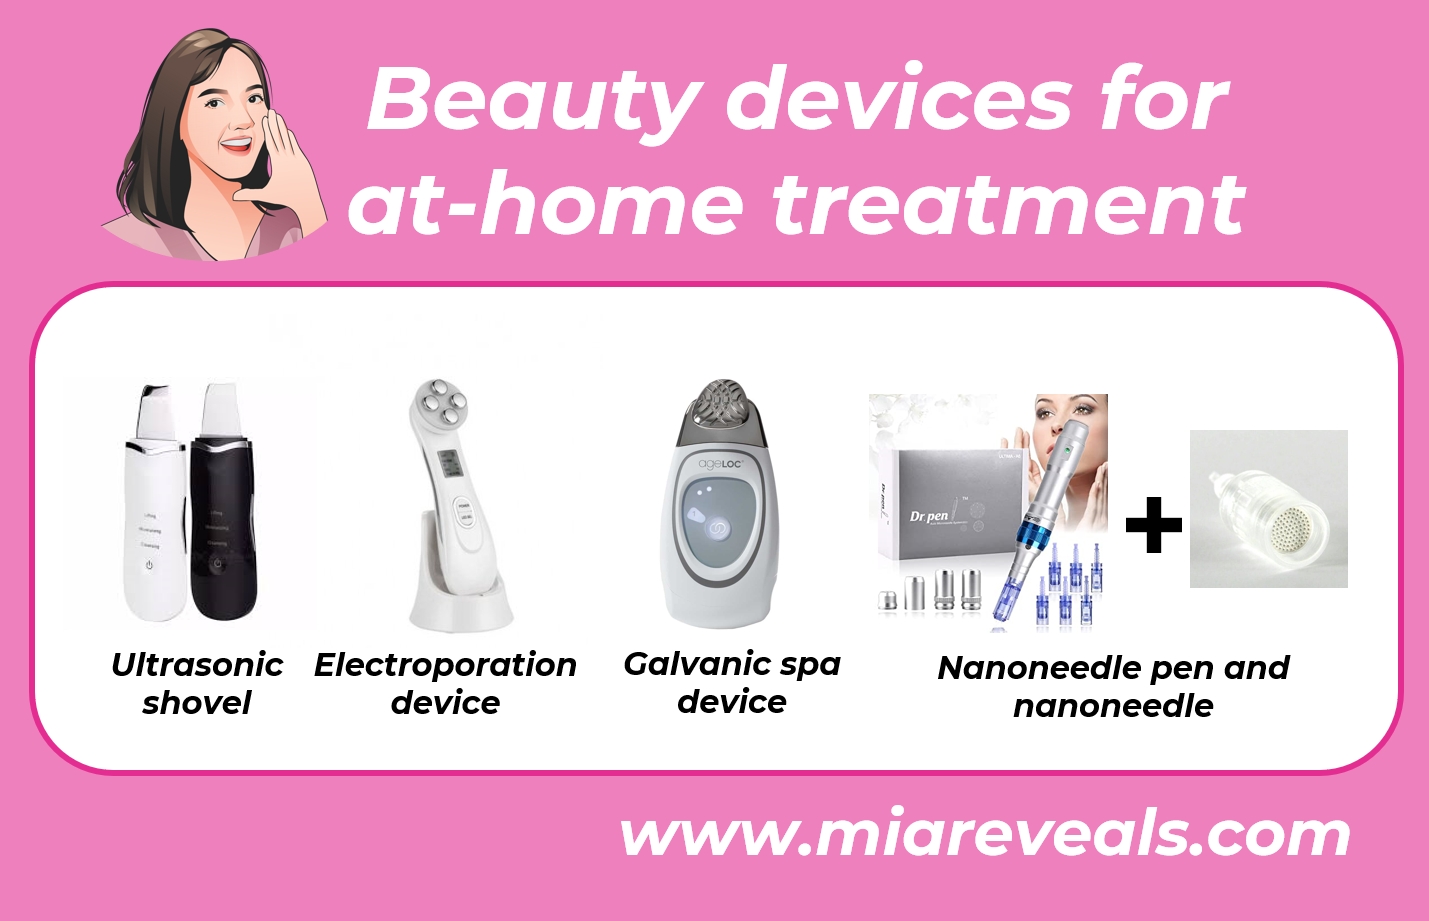 eberapa contoh beauty devices yang bisa dipakai untuk perawatan di rumah. Device photo is copyright of each brand (Ultrasonic Shovel, 5-in-1 RF EMS Electroporation, NuSkin® ageLOC® GALVANIC SPA®, Dr. pen®).